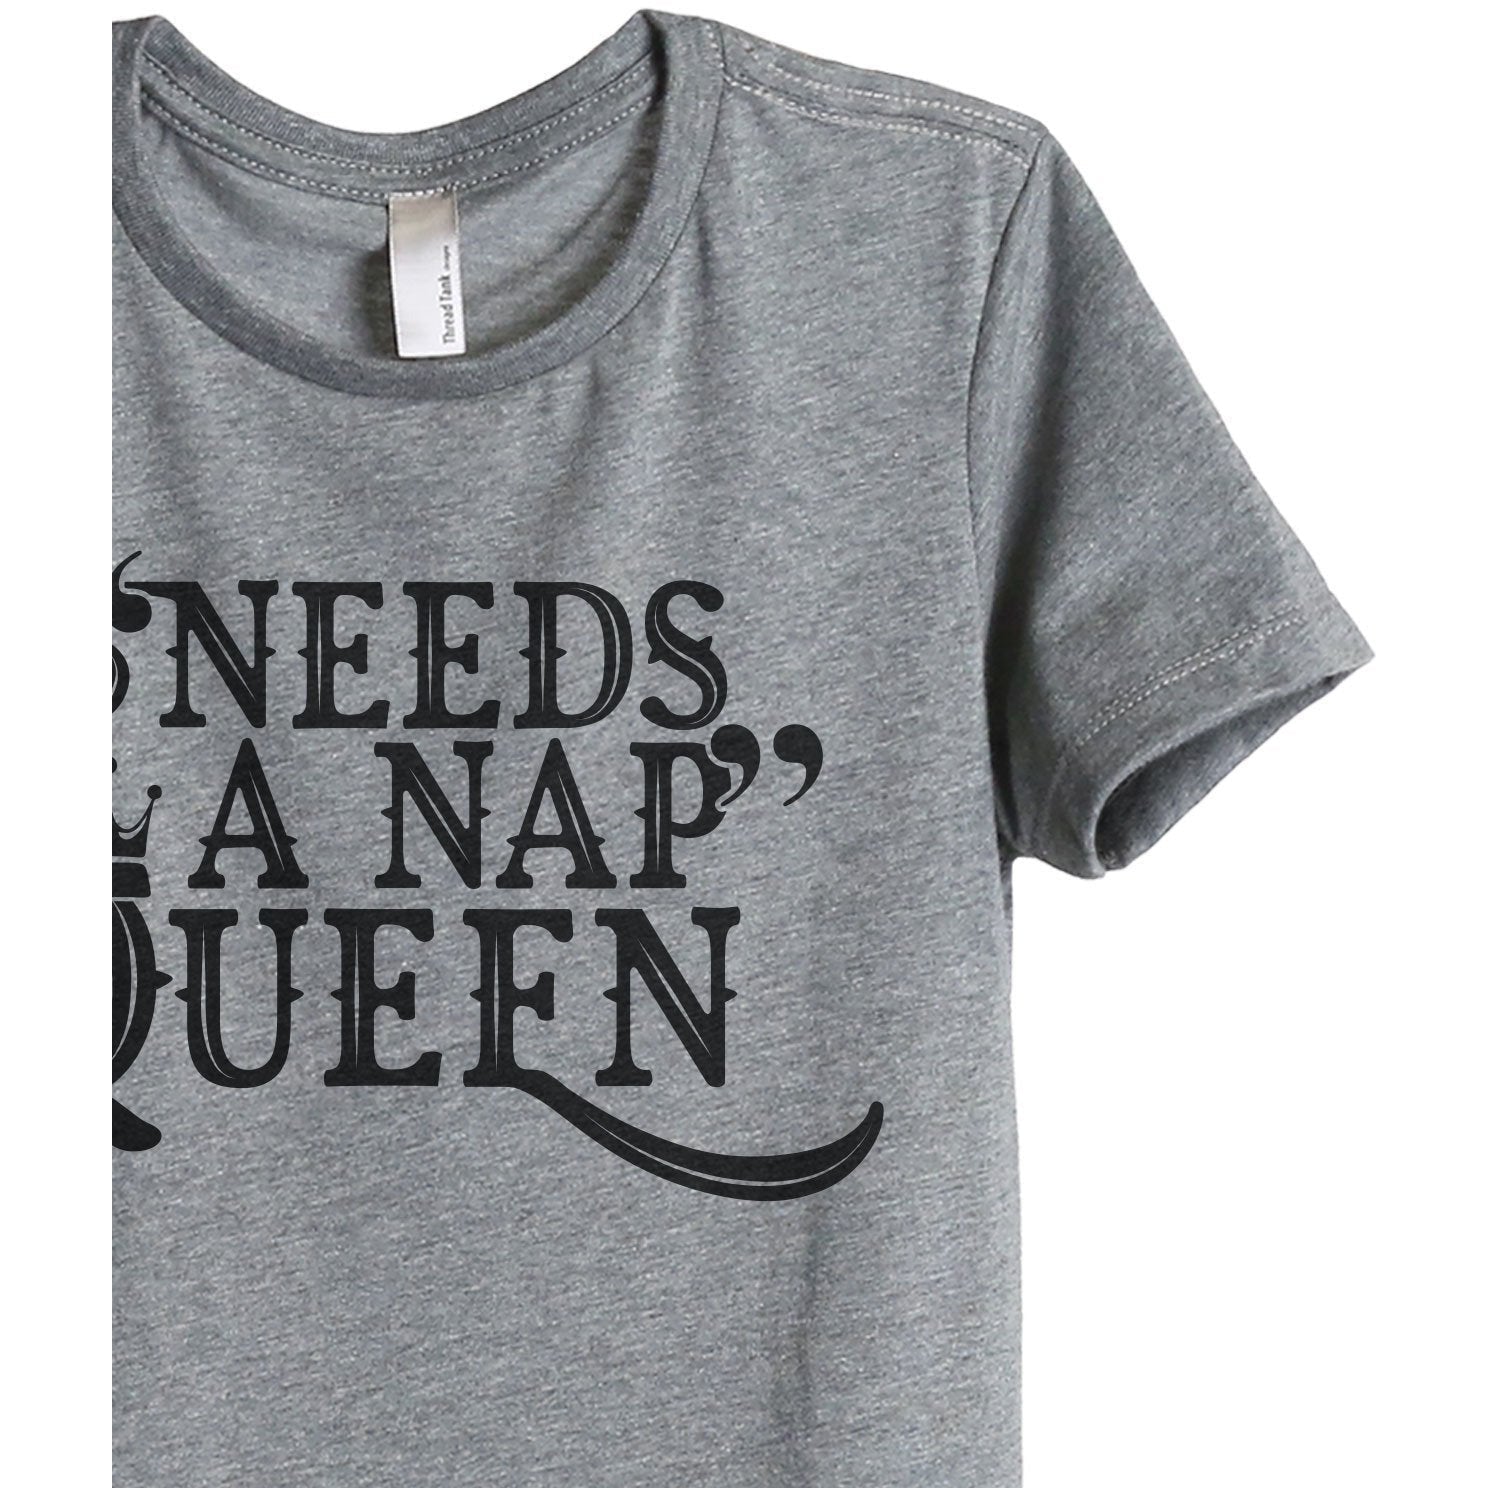 Needs A Nap Queen Women's Relaxed Crew T-Shirt Heather Gray Shirt Image